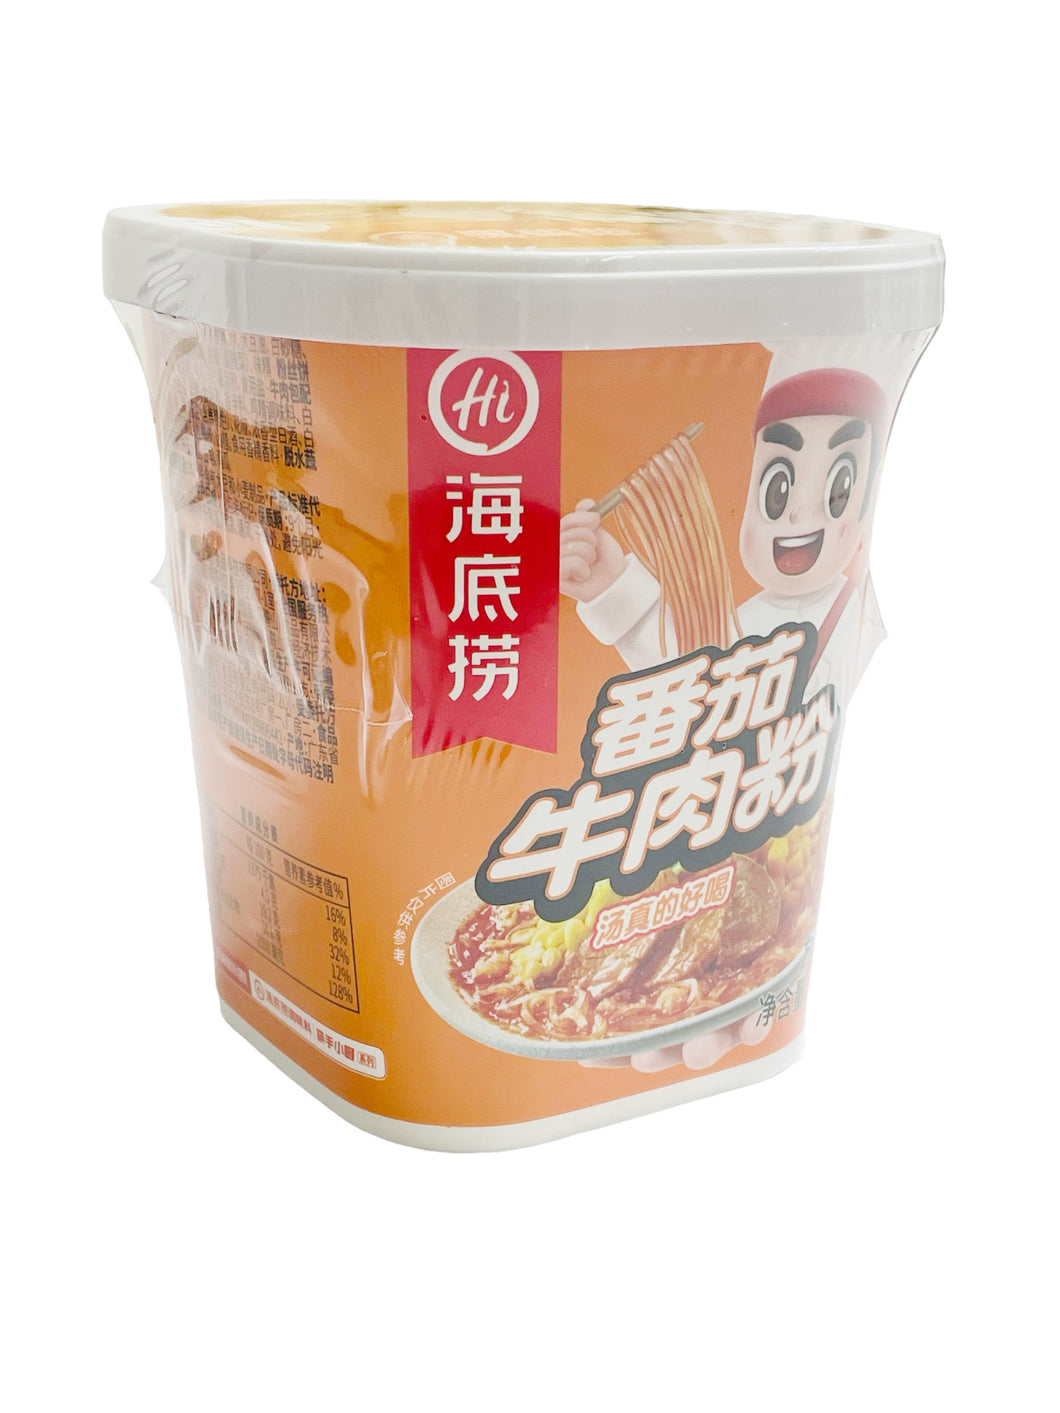 Hi Rice Noodles 119g 海底捞番茄牛肉粉